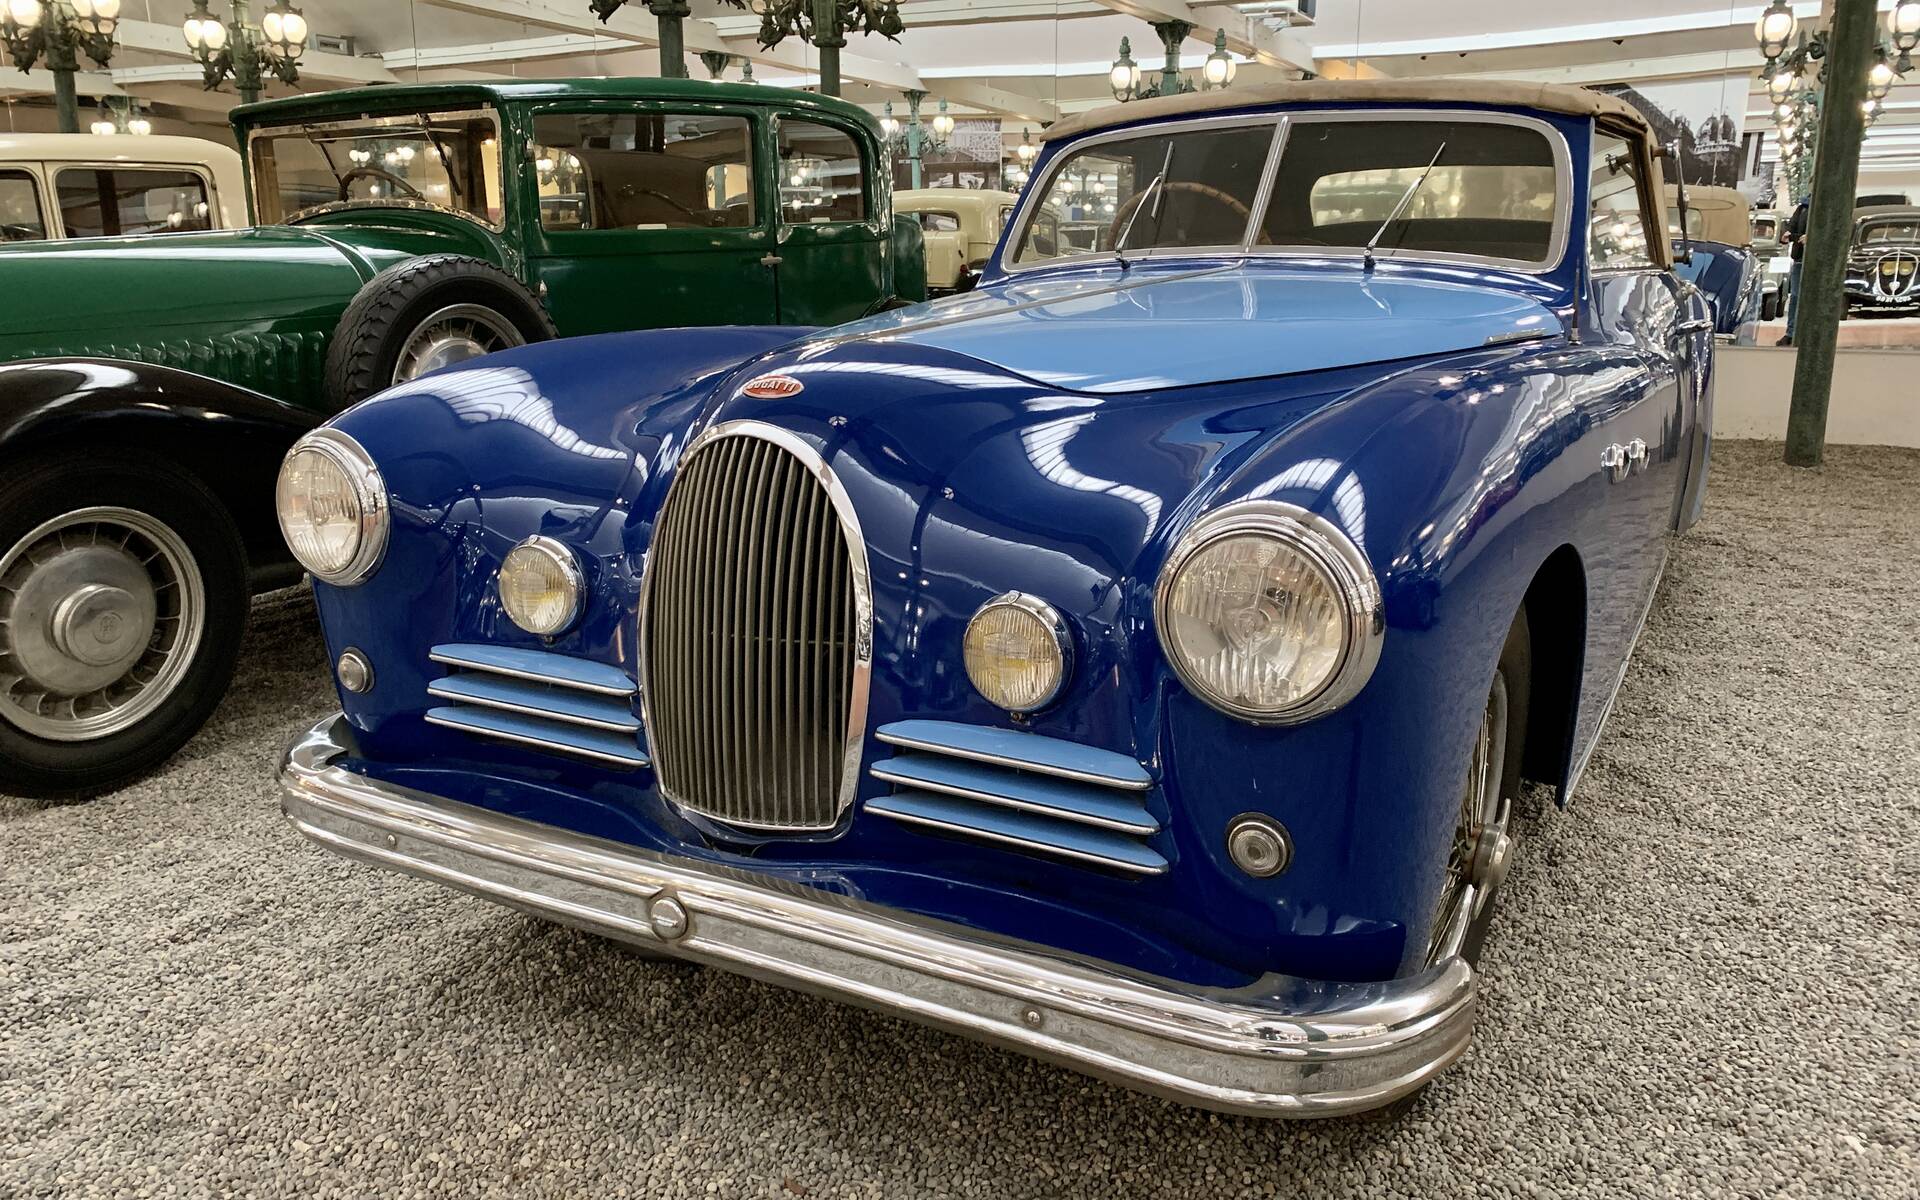 En photos : une centaine de Bugatti réunies dans un même musée 503065-en-photos-des-dizaines-de-bugatti-reunies-dans-un-meme-musee